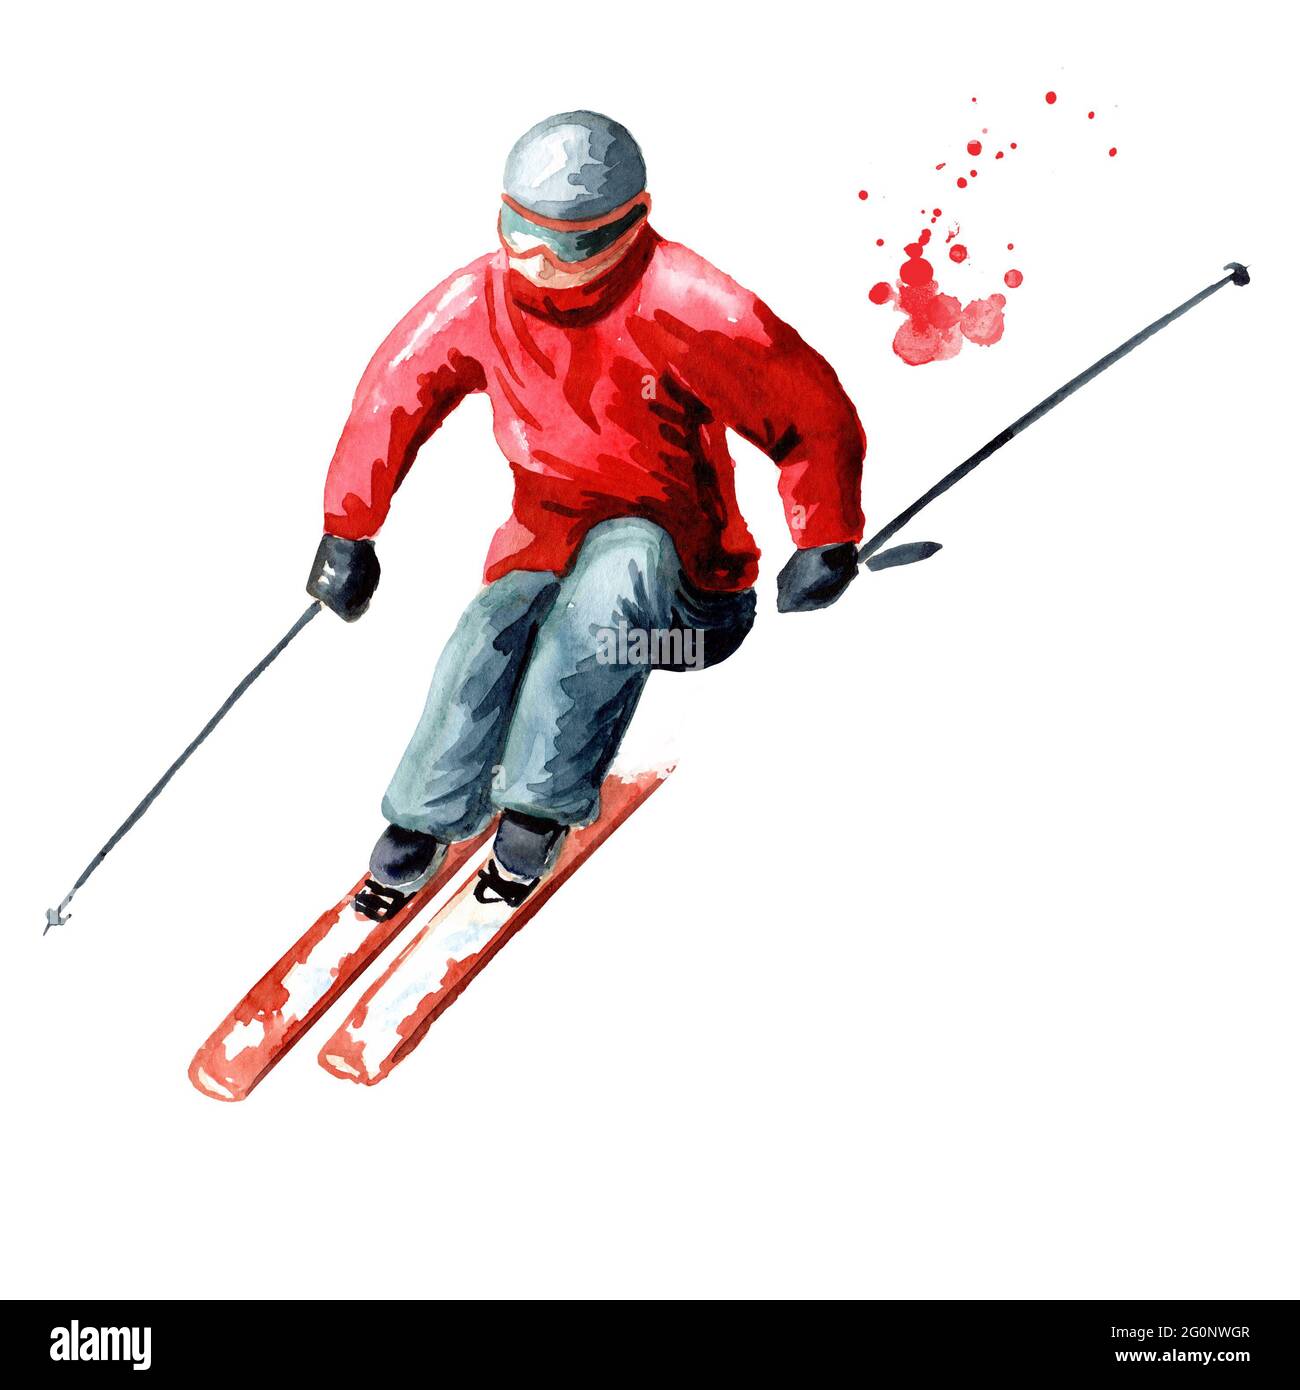 Ski, loisirs d'hiver et concept de vacances. Illustration aquarelle dessinée à la main isolée sur fond blanc Banque D'Images